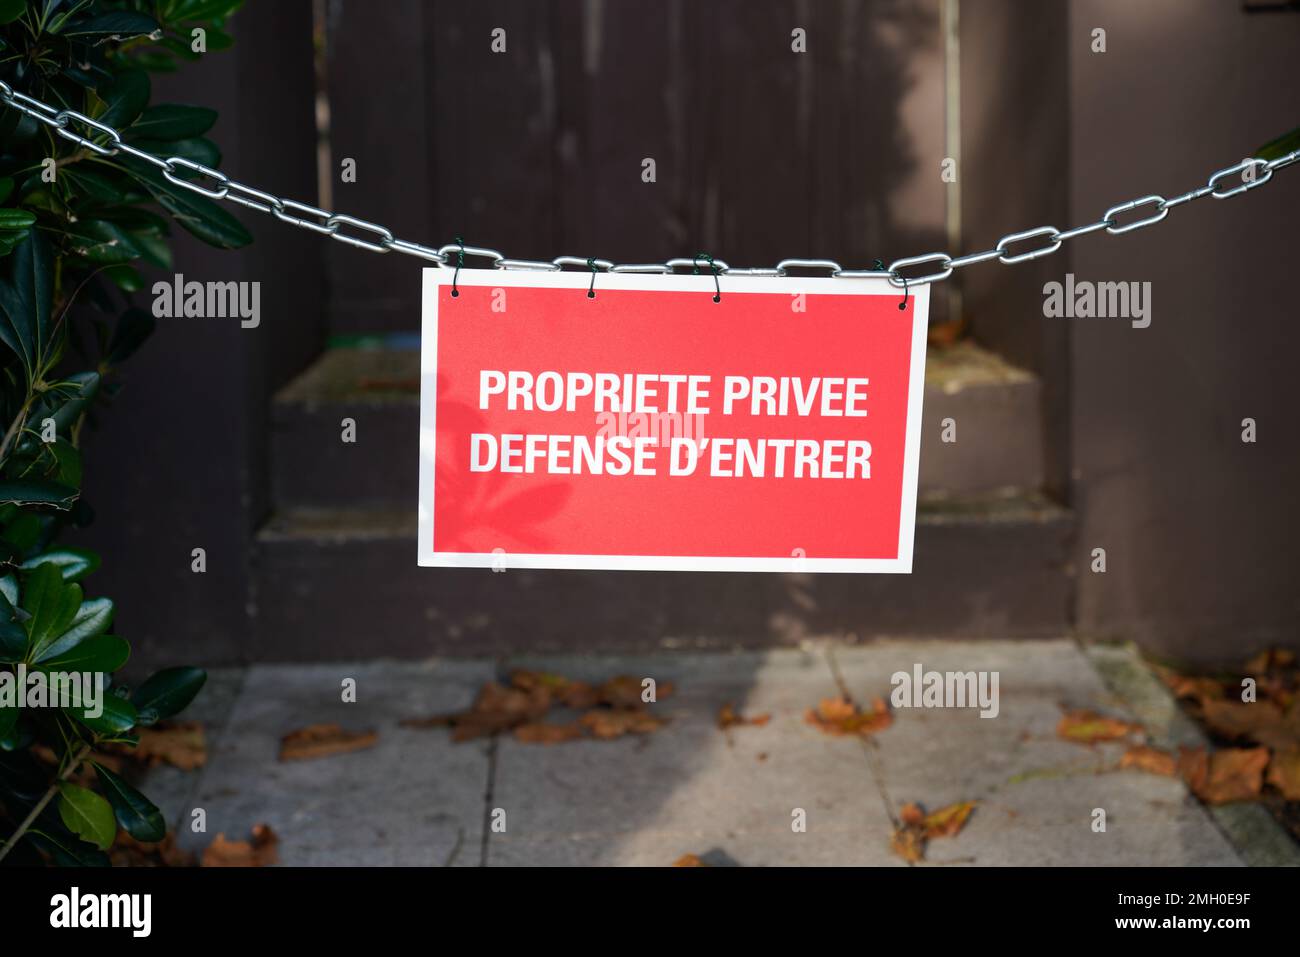 Proprietà privata NO entry pannello di cartello in francese significa proprietario privee difesa d'entree Foto Stock